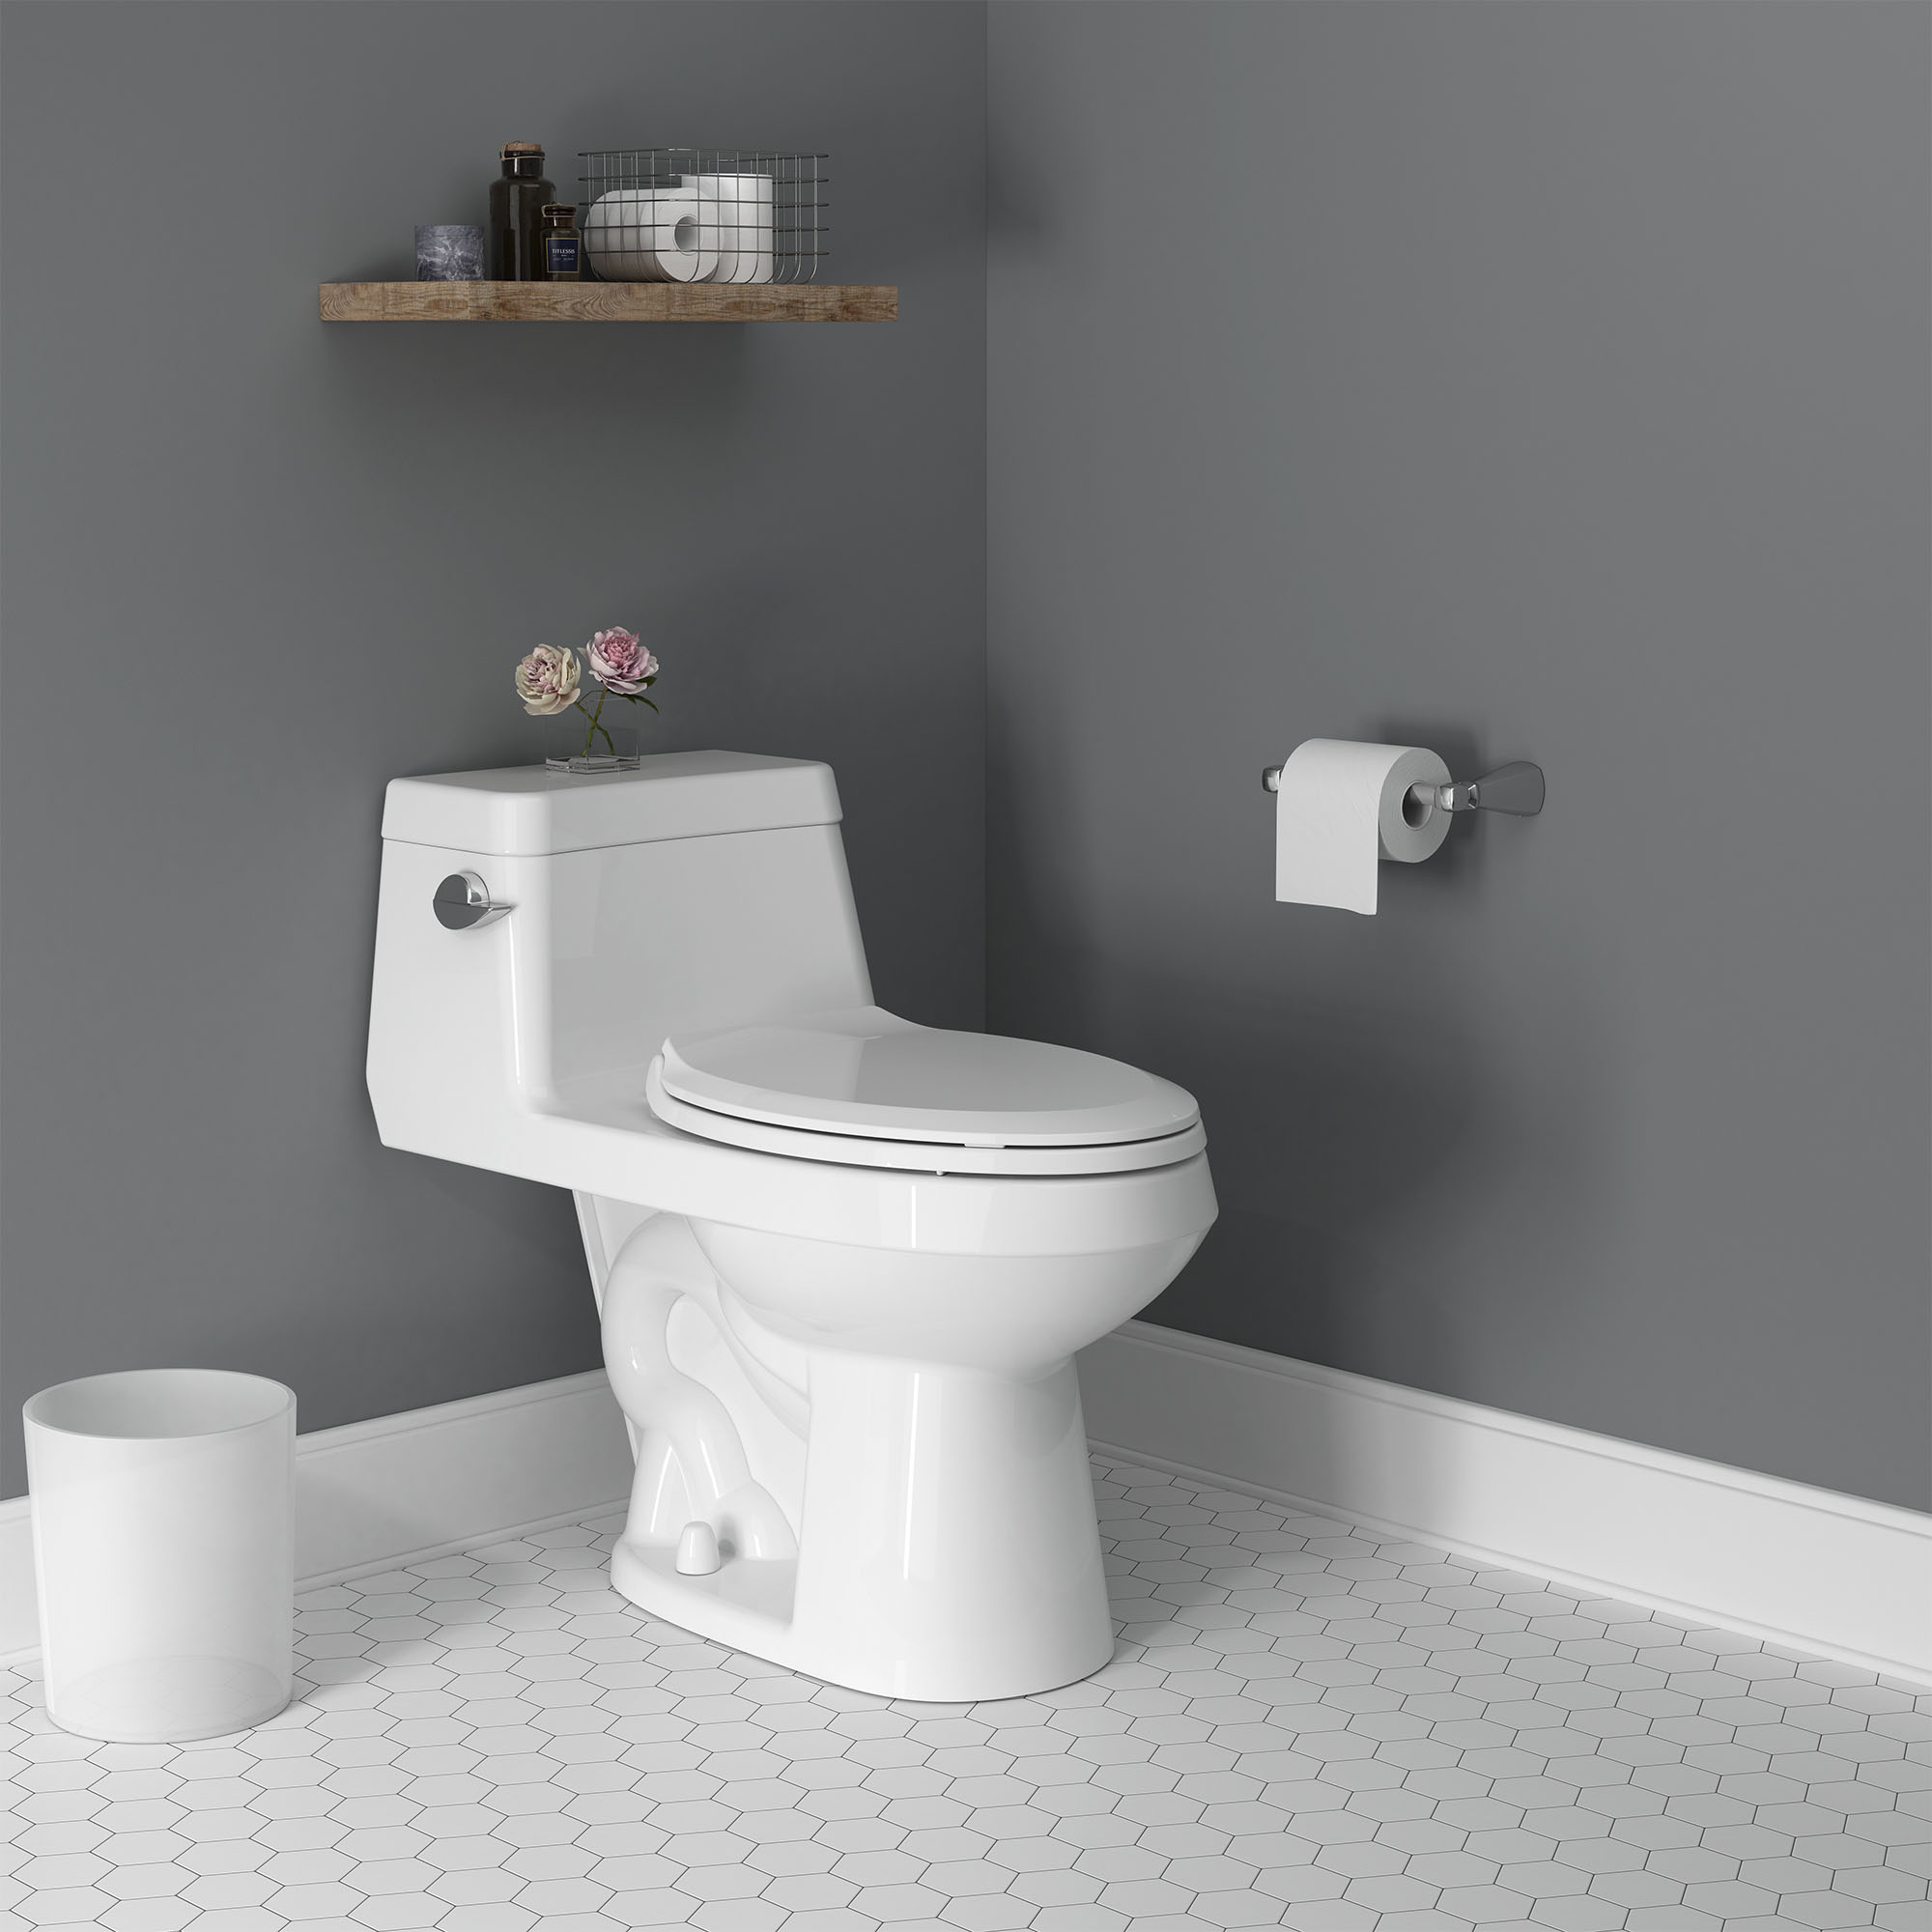 Toilette monopièce Colony, 1,28 gpc/4,8 lpc, à cuvette allongée à hauteur de chaise avec siège